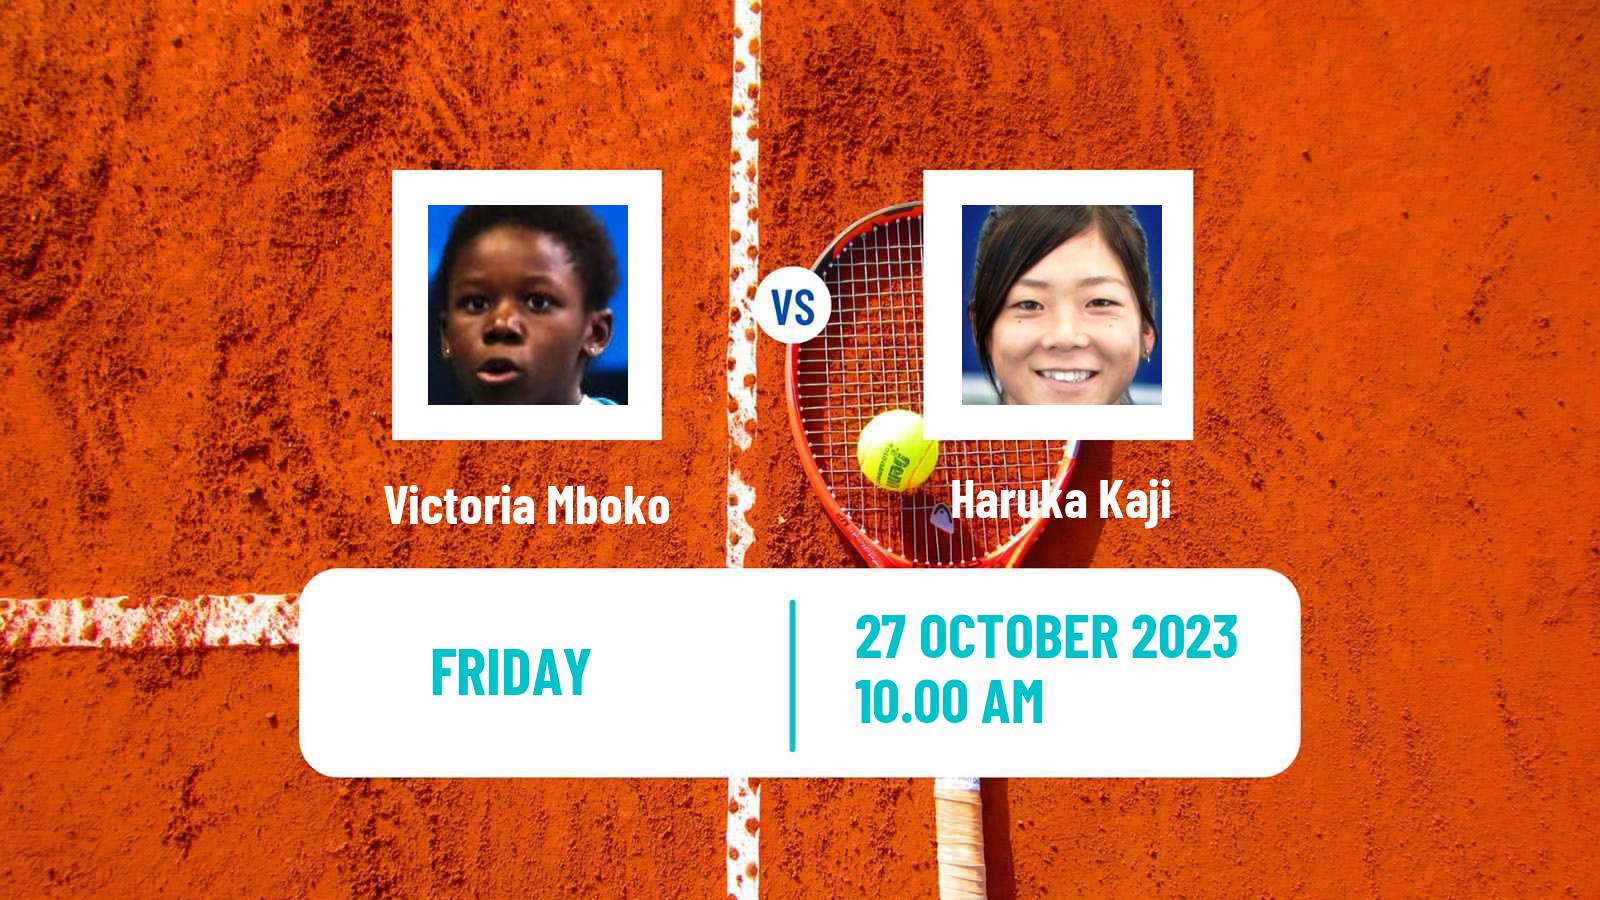 Tennis ITF W60 Toronto Women Victoria Mboko - Haruka Kaji